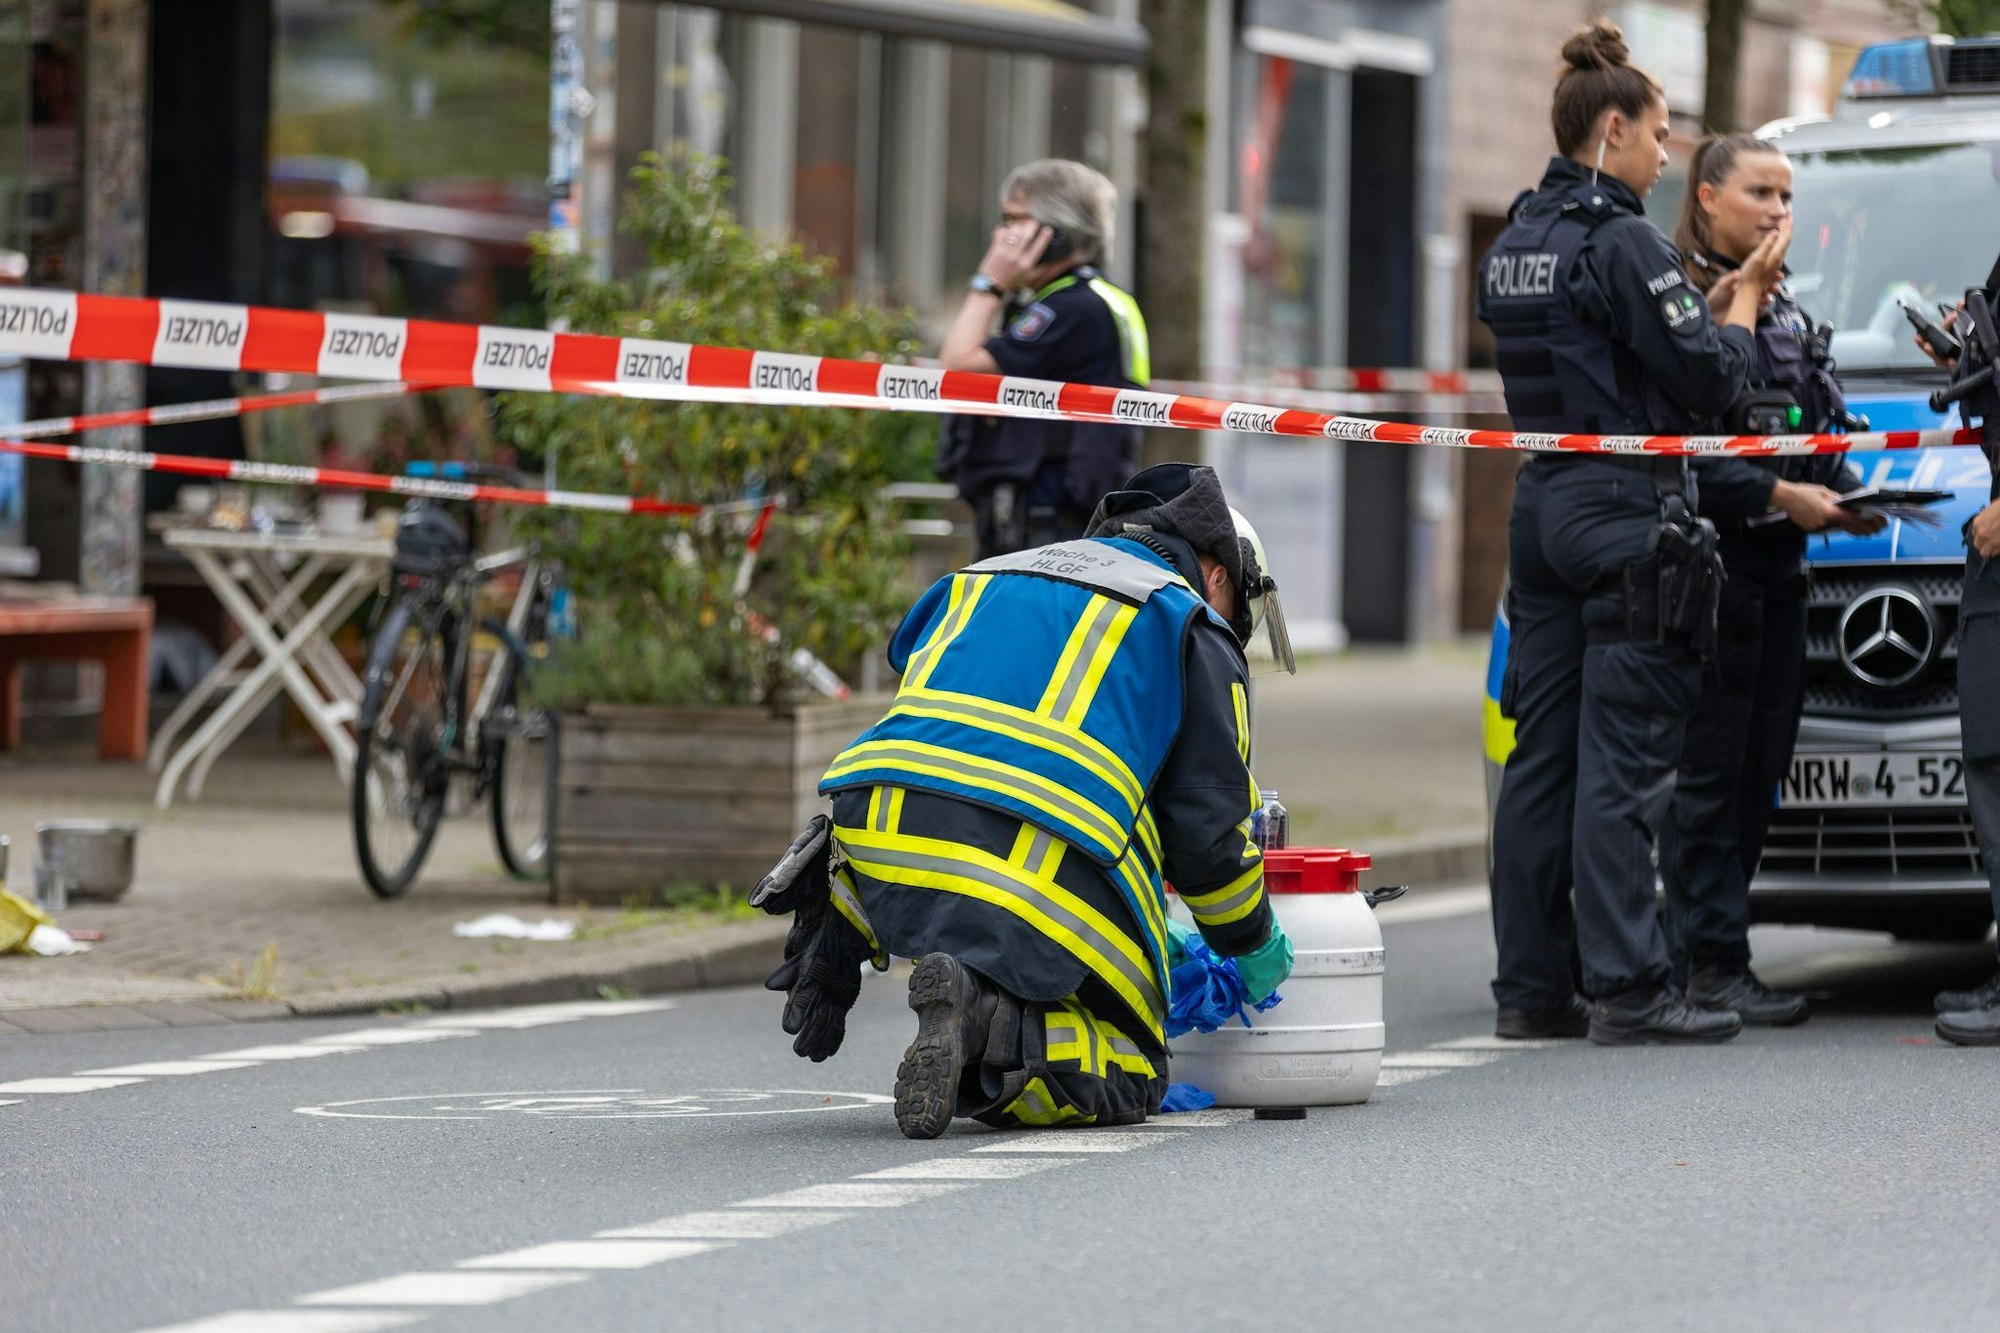 Polizeieinsatz vor dem Bochumer Café, in dem es zu dem Säureangriff kam. Der mutmaßliche Täter wurde kurz nach der Attacke in der Nähe festgenommen.